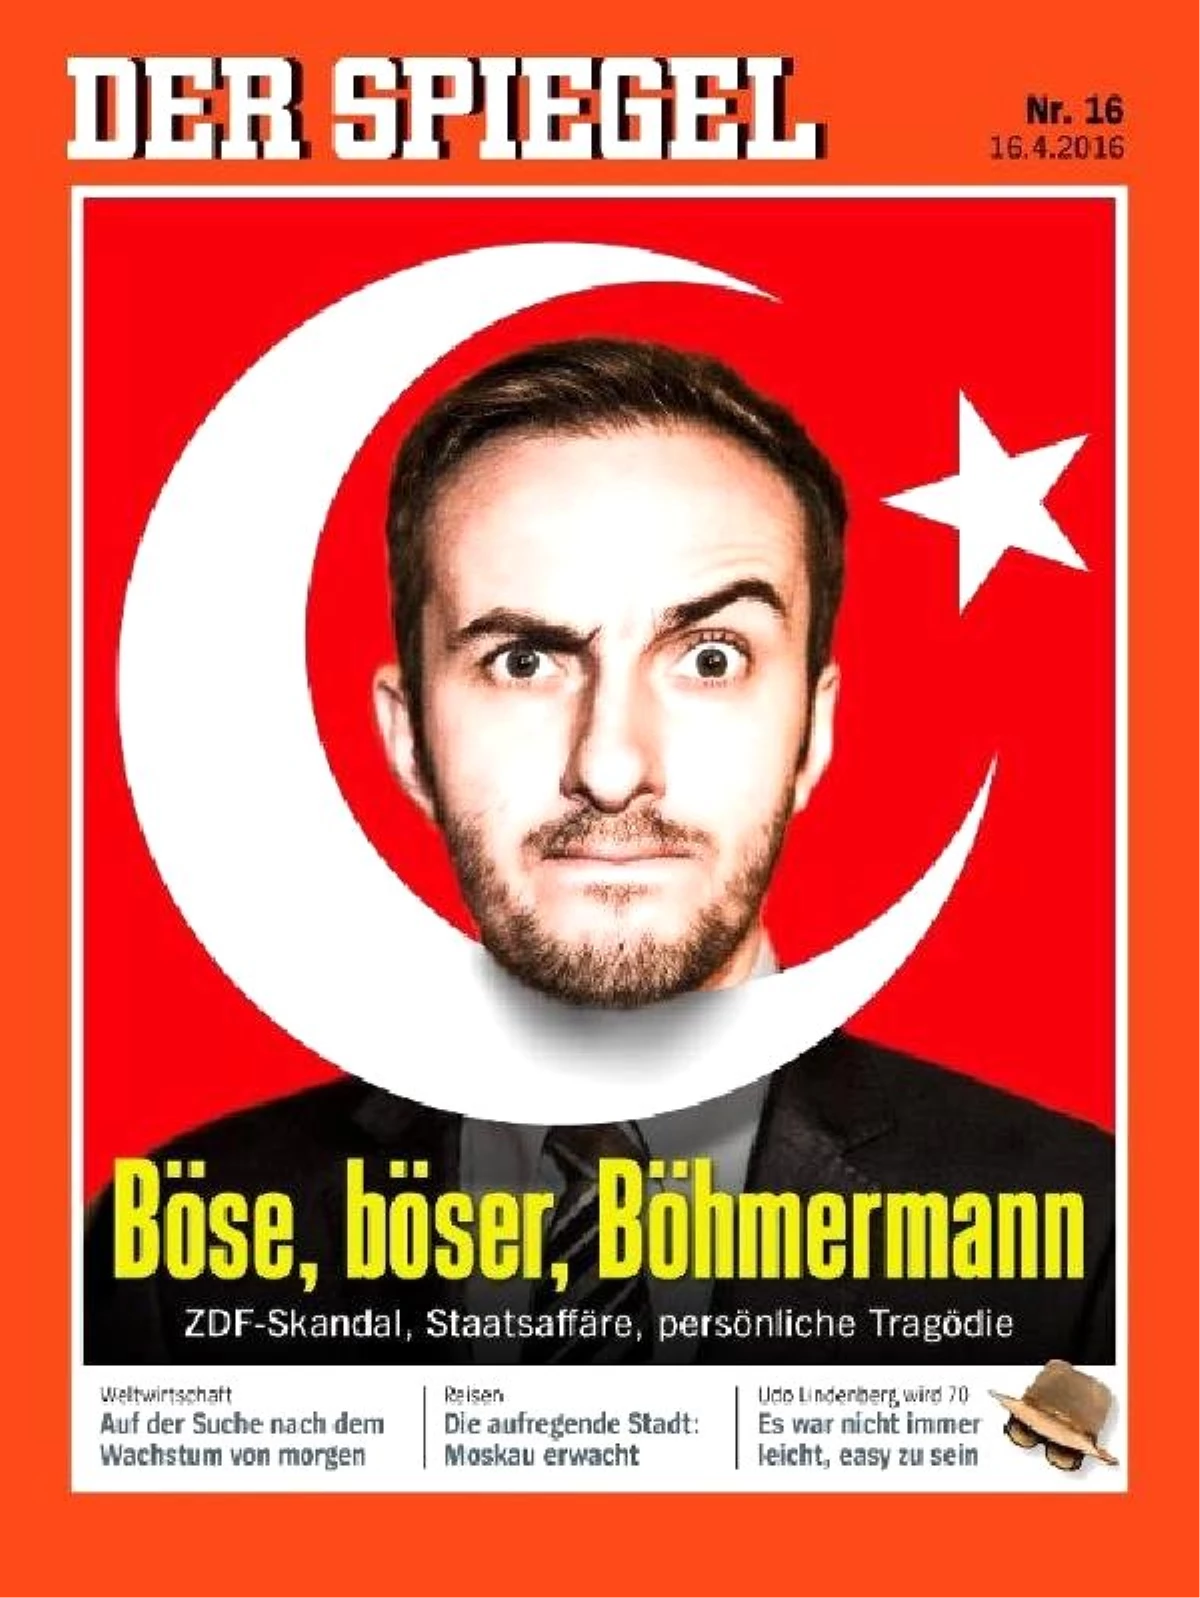 Alman Der Spiegel Dergisi Şiir Krizini Kapağına Taşıdı